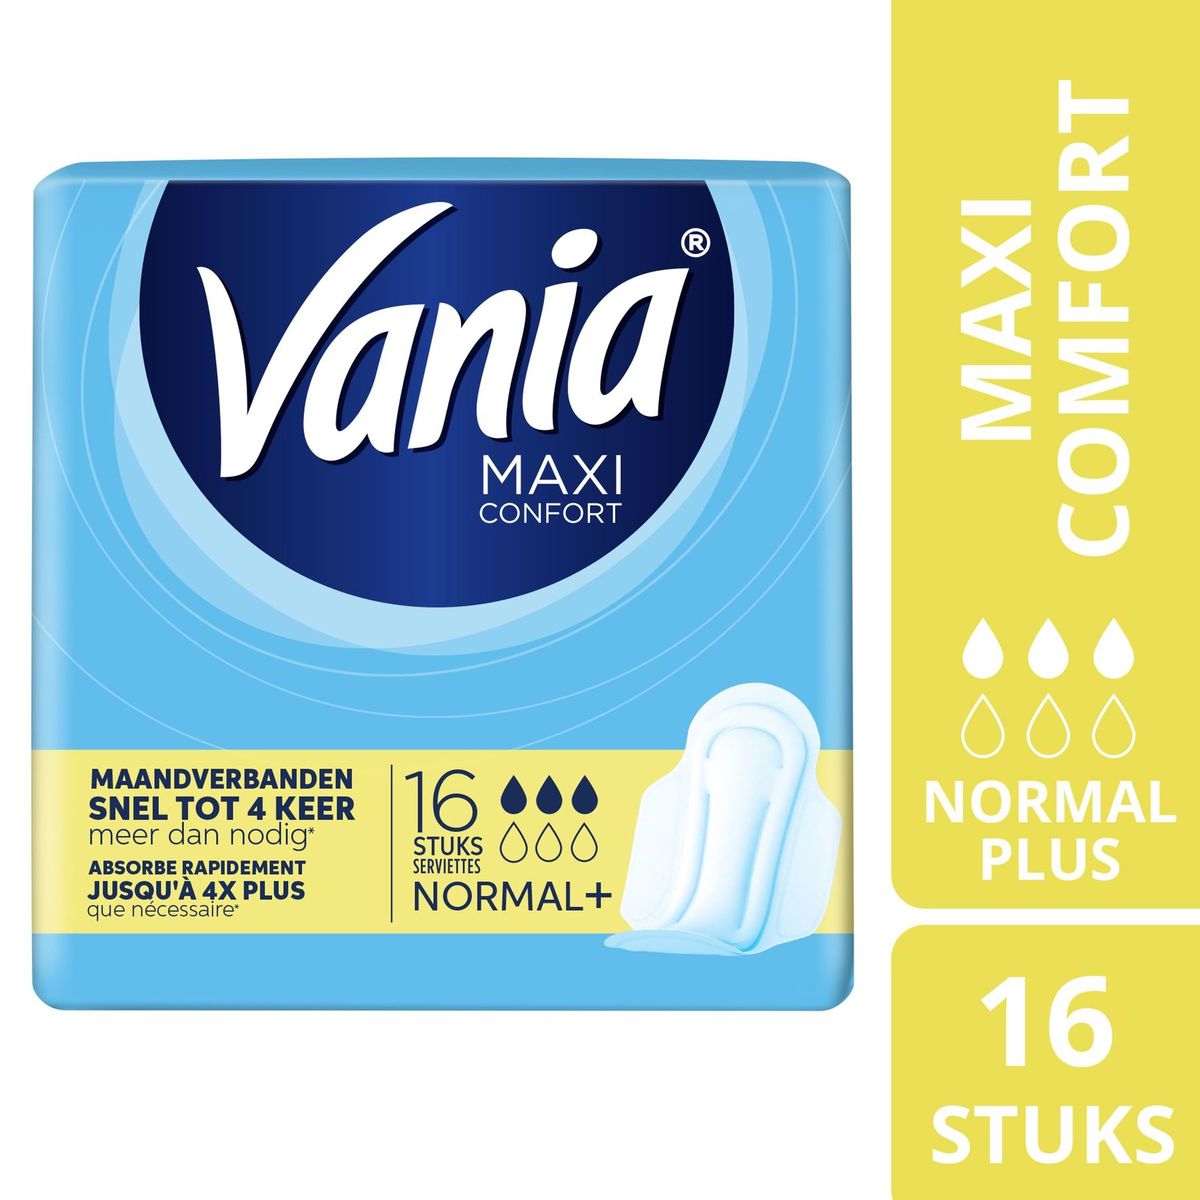 Vania Maxi Confort Normal+ Maandverbanden 16 Stuks